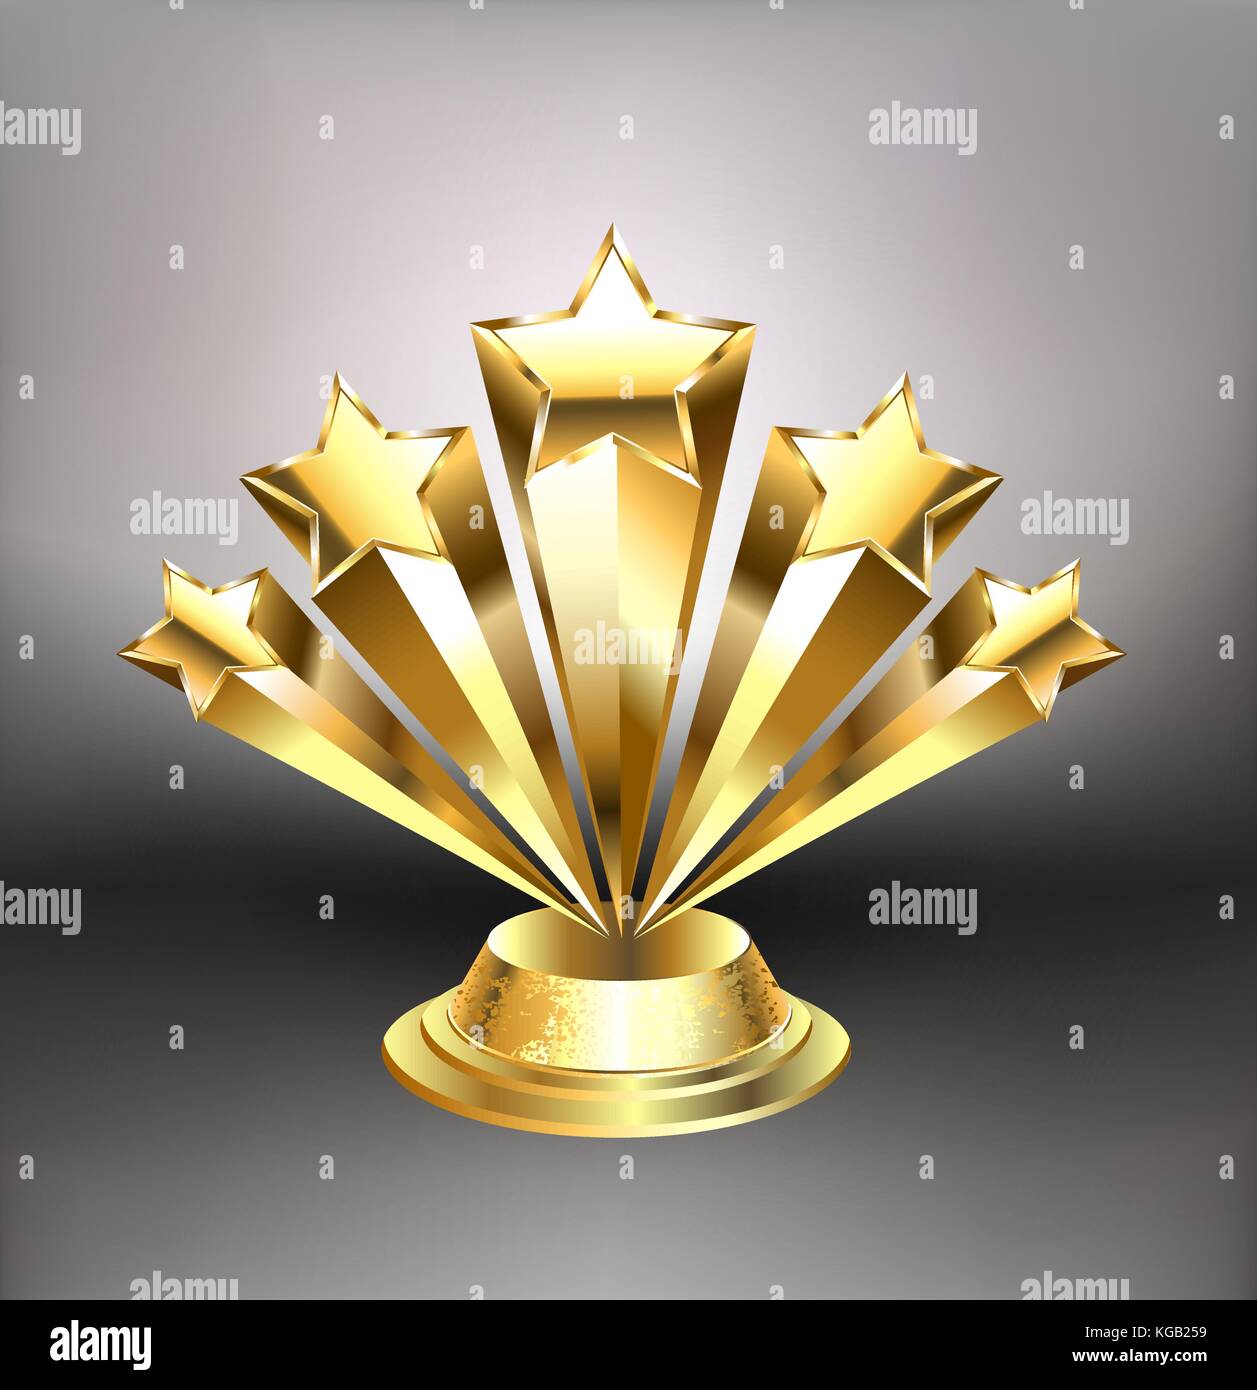 Auszeichnung von fünf goldene Sterne auf einem hellen Hintergrund. Design mit goldenen Sternen. Stock Vektor